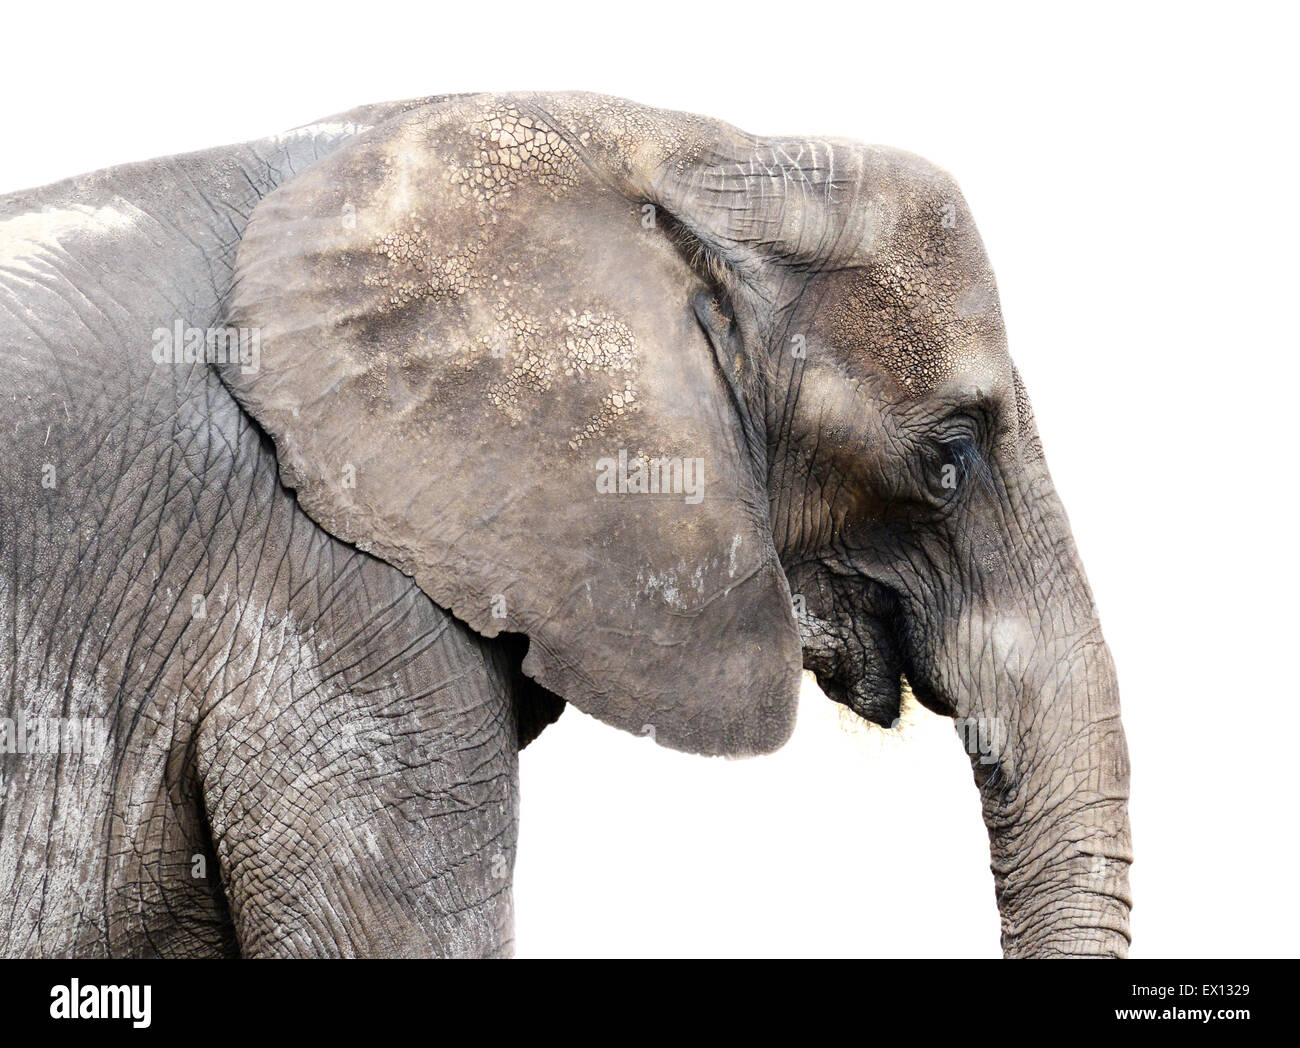 Elephant isolated on a white background Stock Photo